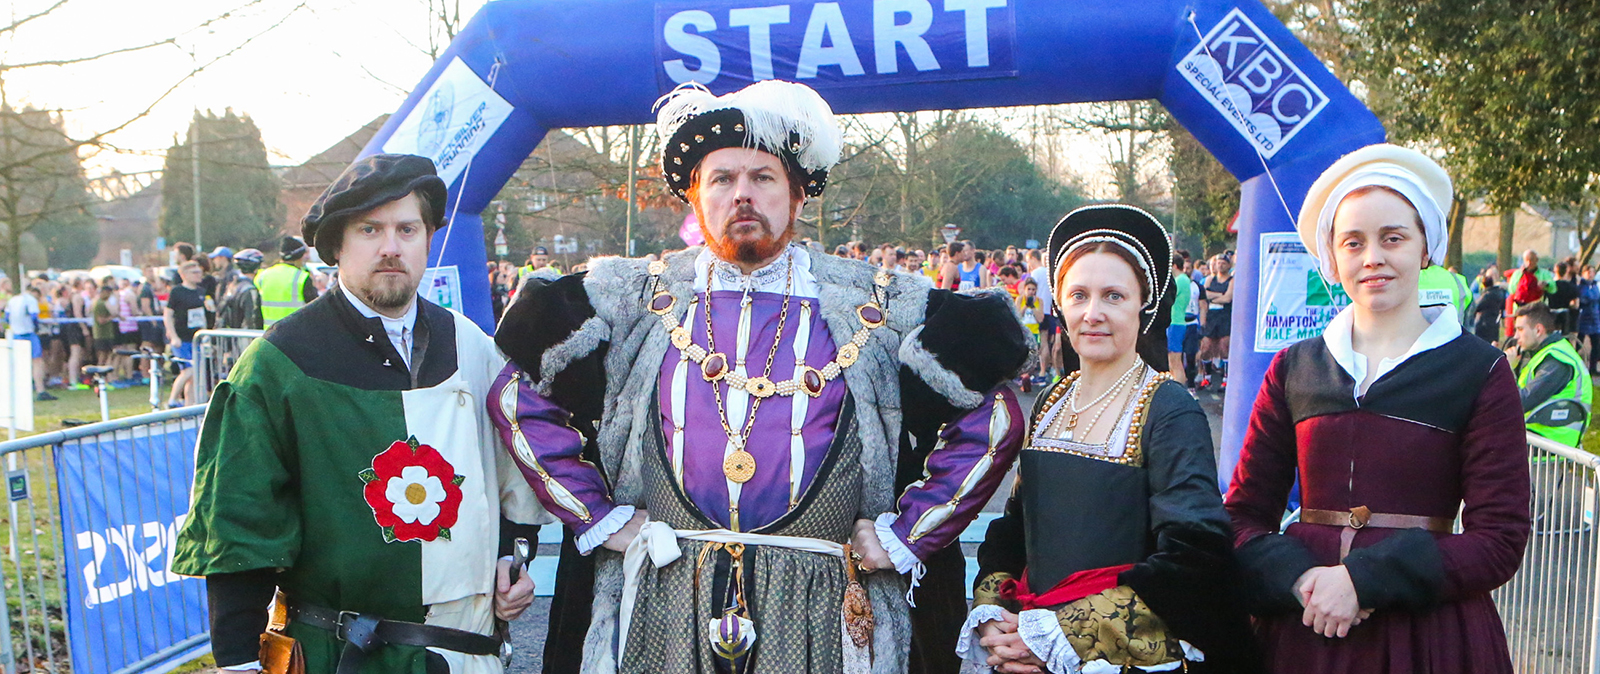 Image for The Quicksilver Hampton Court Half Marathon